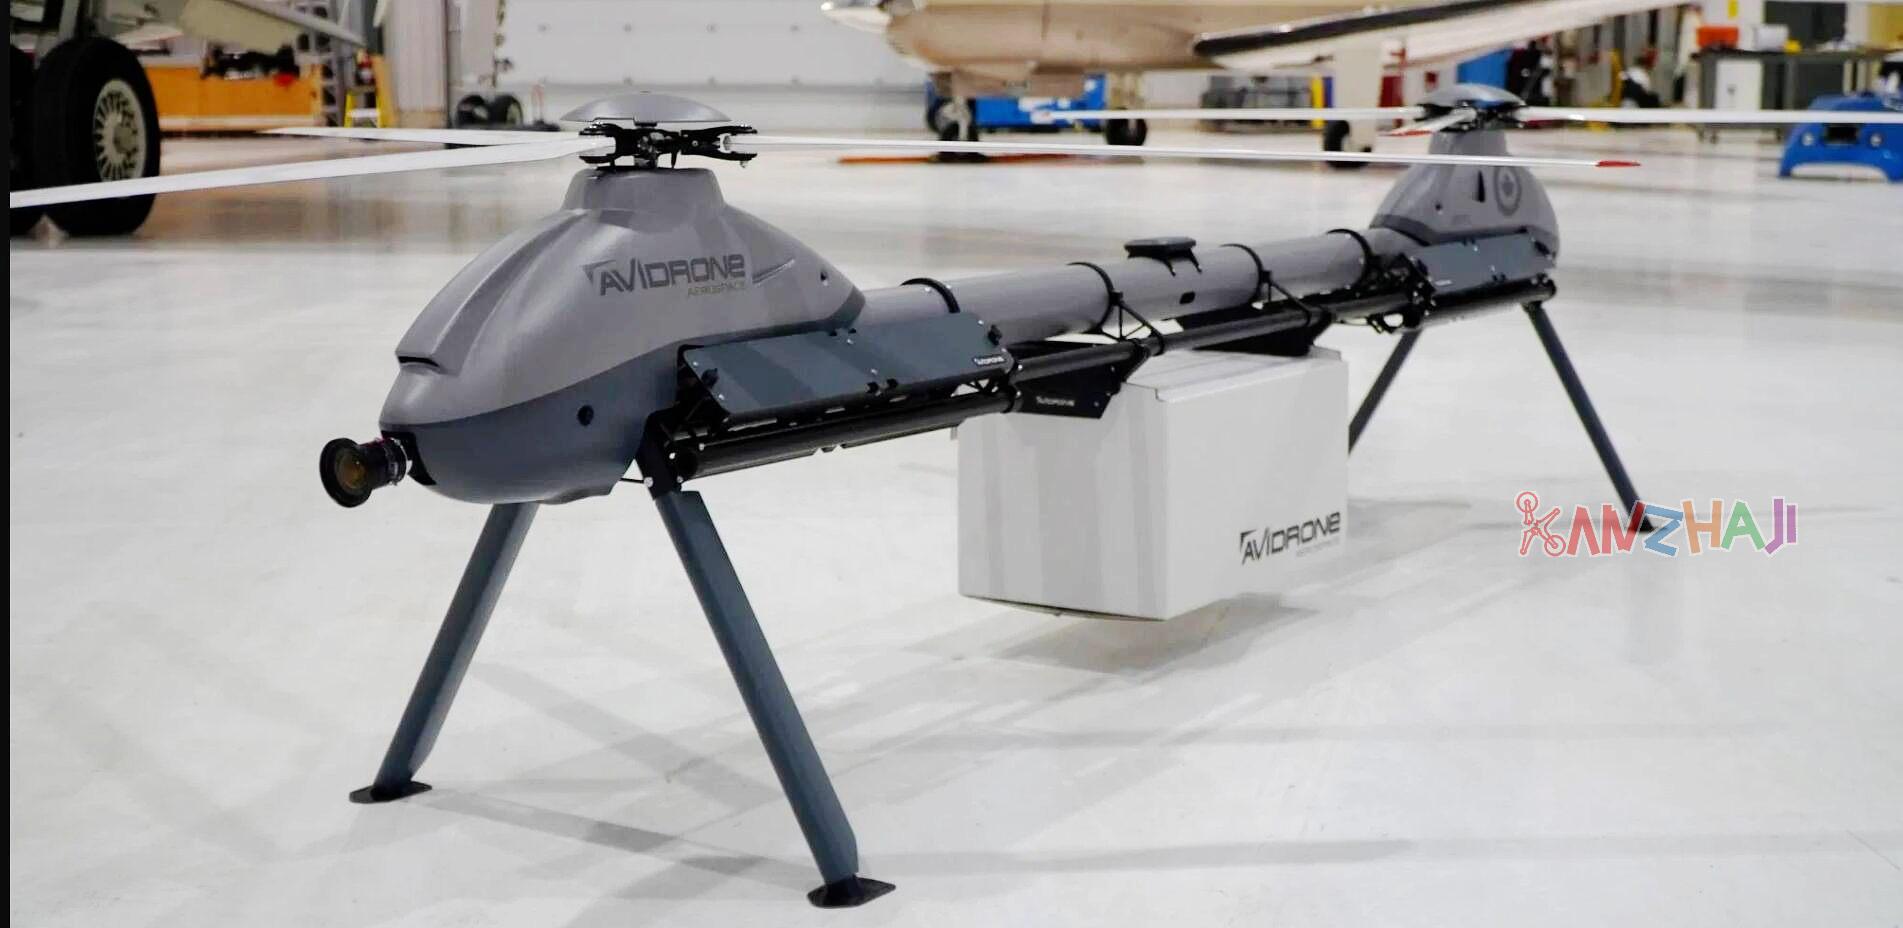 Avidrone公司在IDEX 2021上展示210TL串联双桨无人机